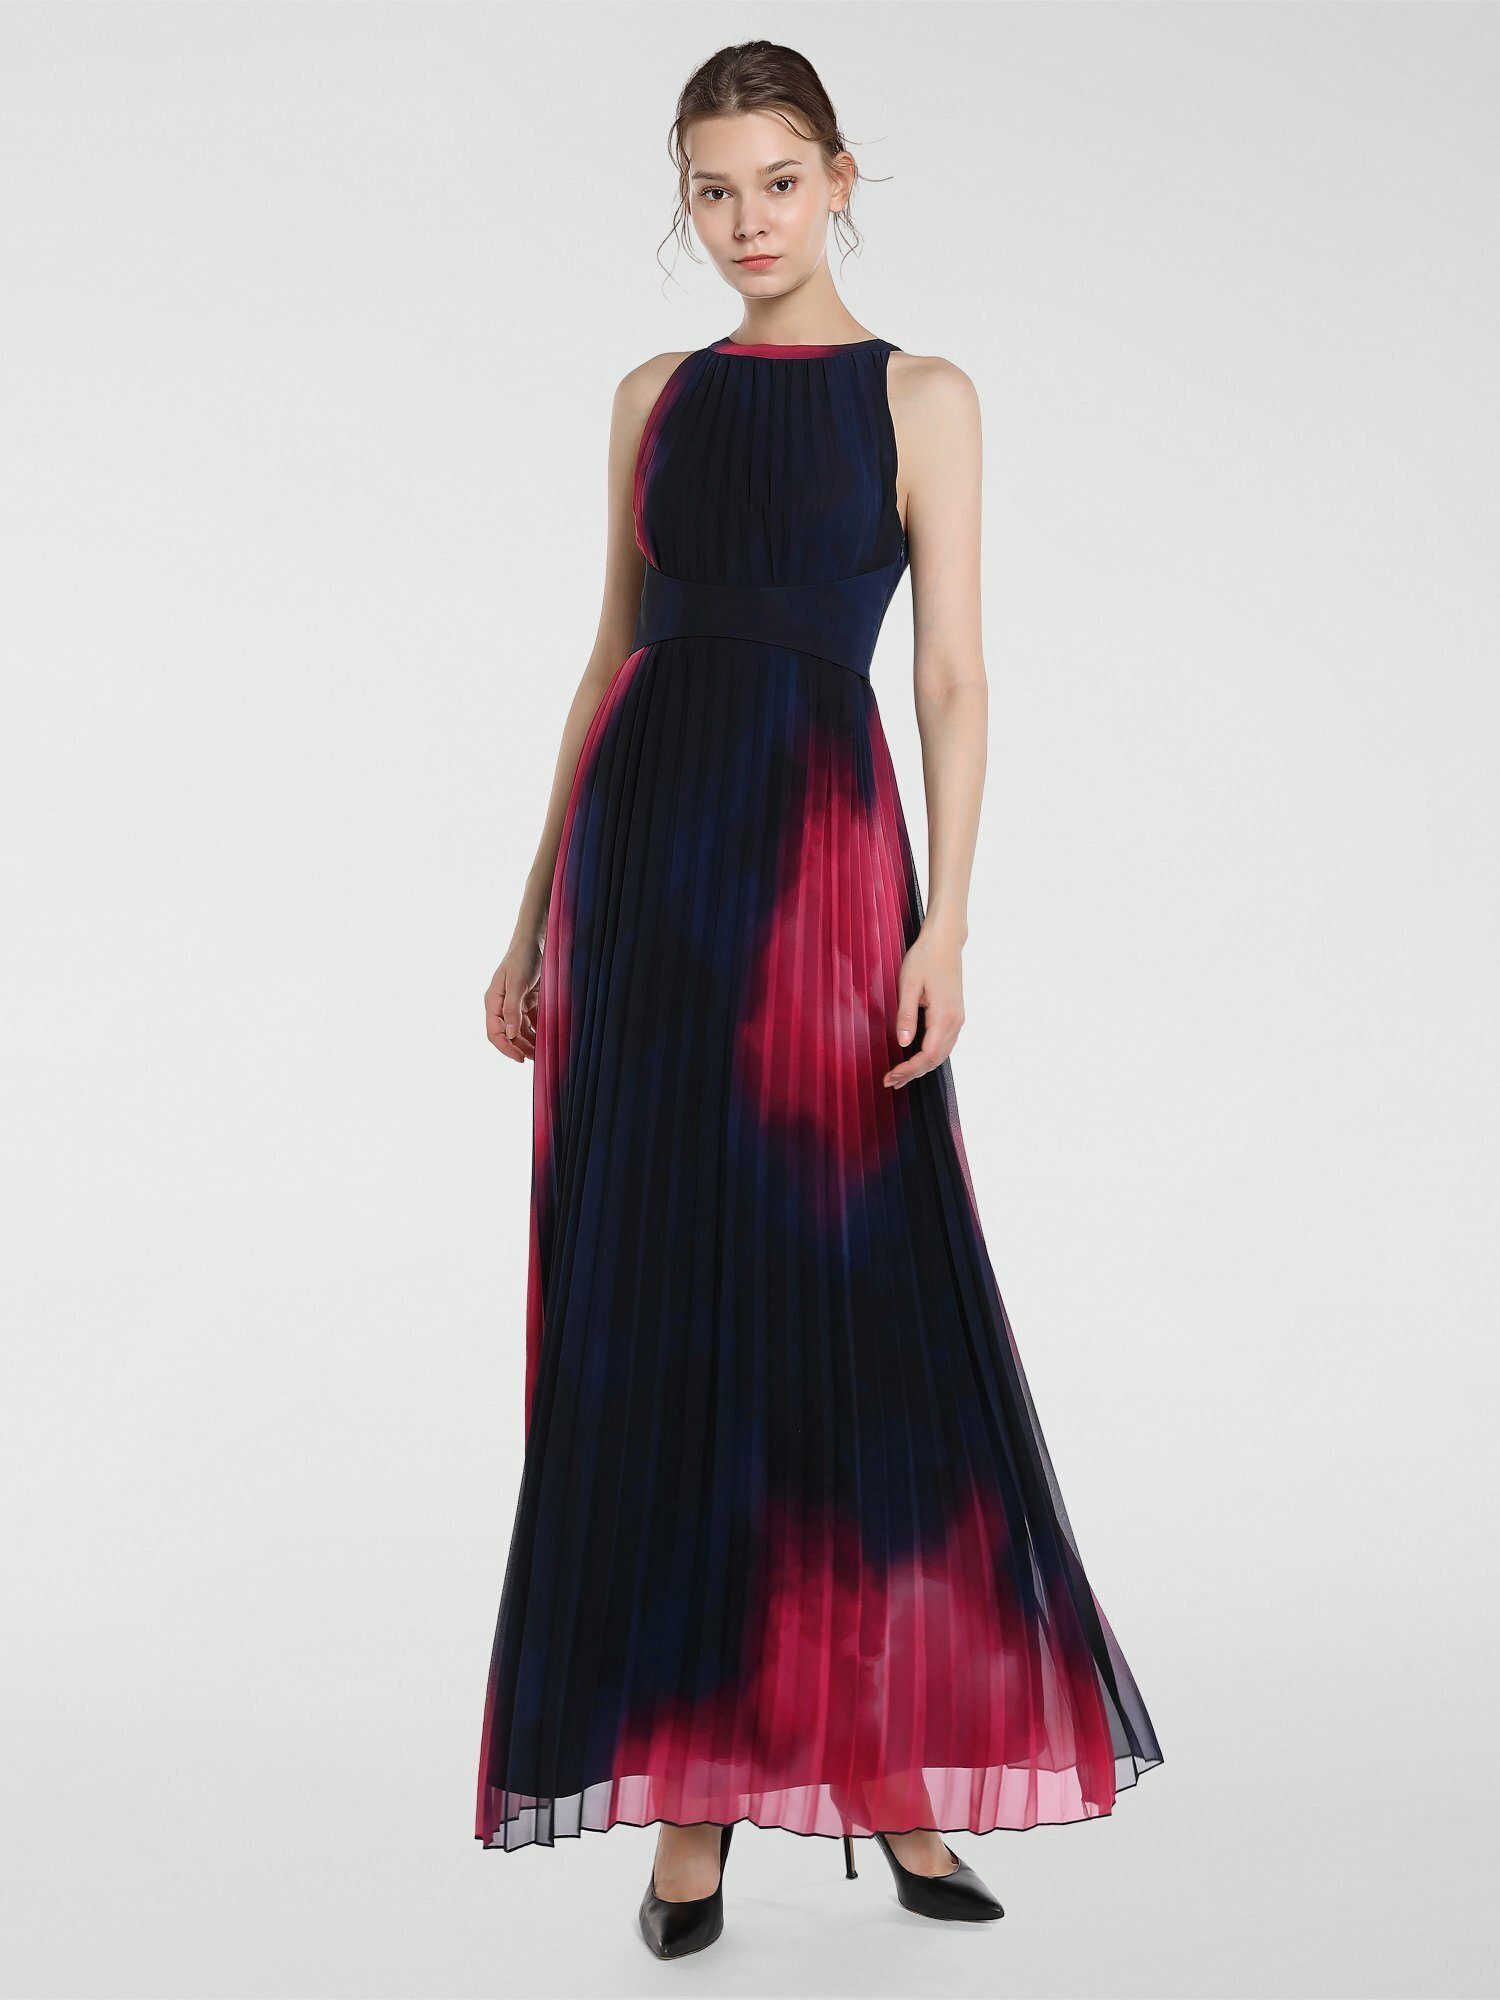 Apart Abendkleid plissiert, ABENDKLEID lang: Kleid in Sonnenplissée,  Empire-Stil online kaufen | OTTO